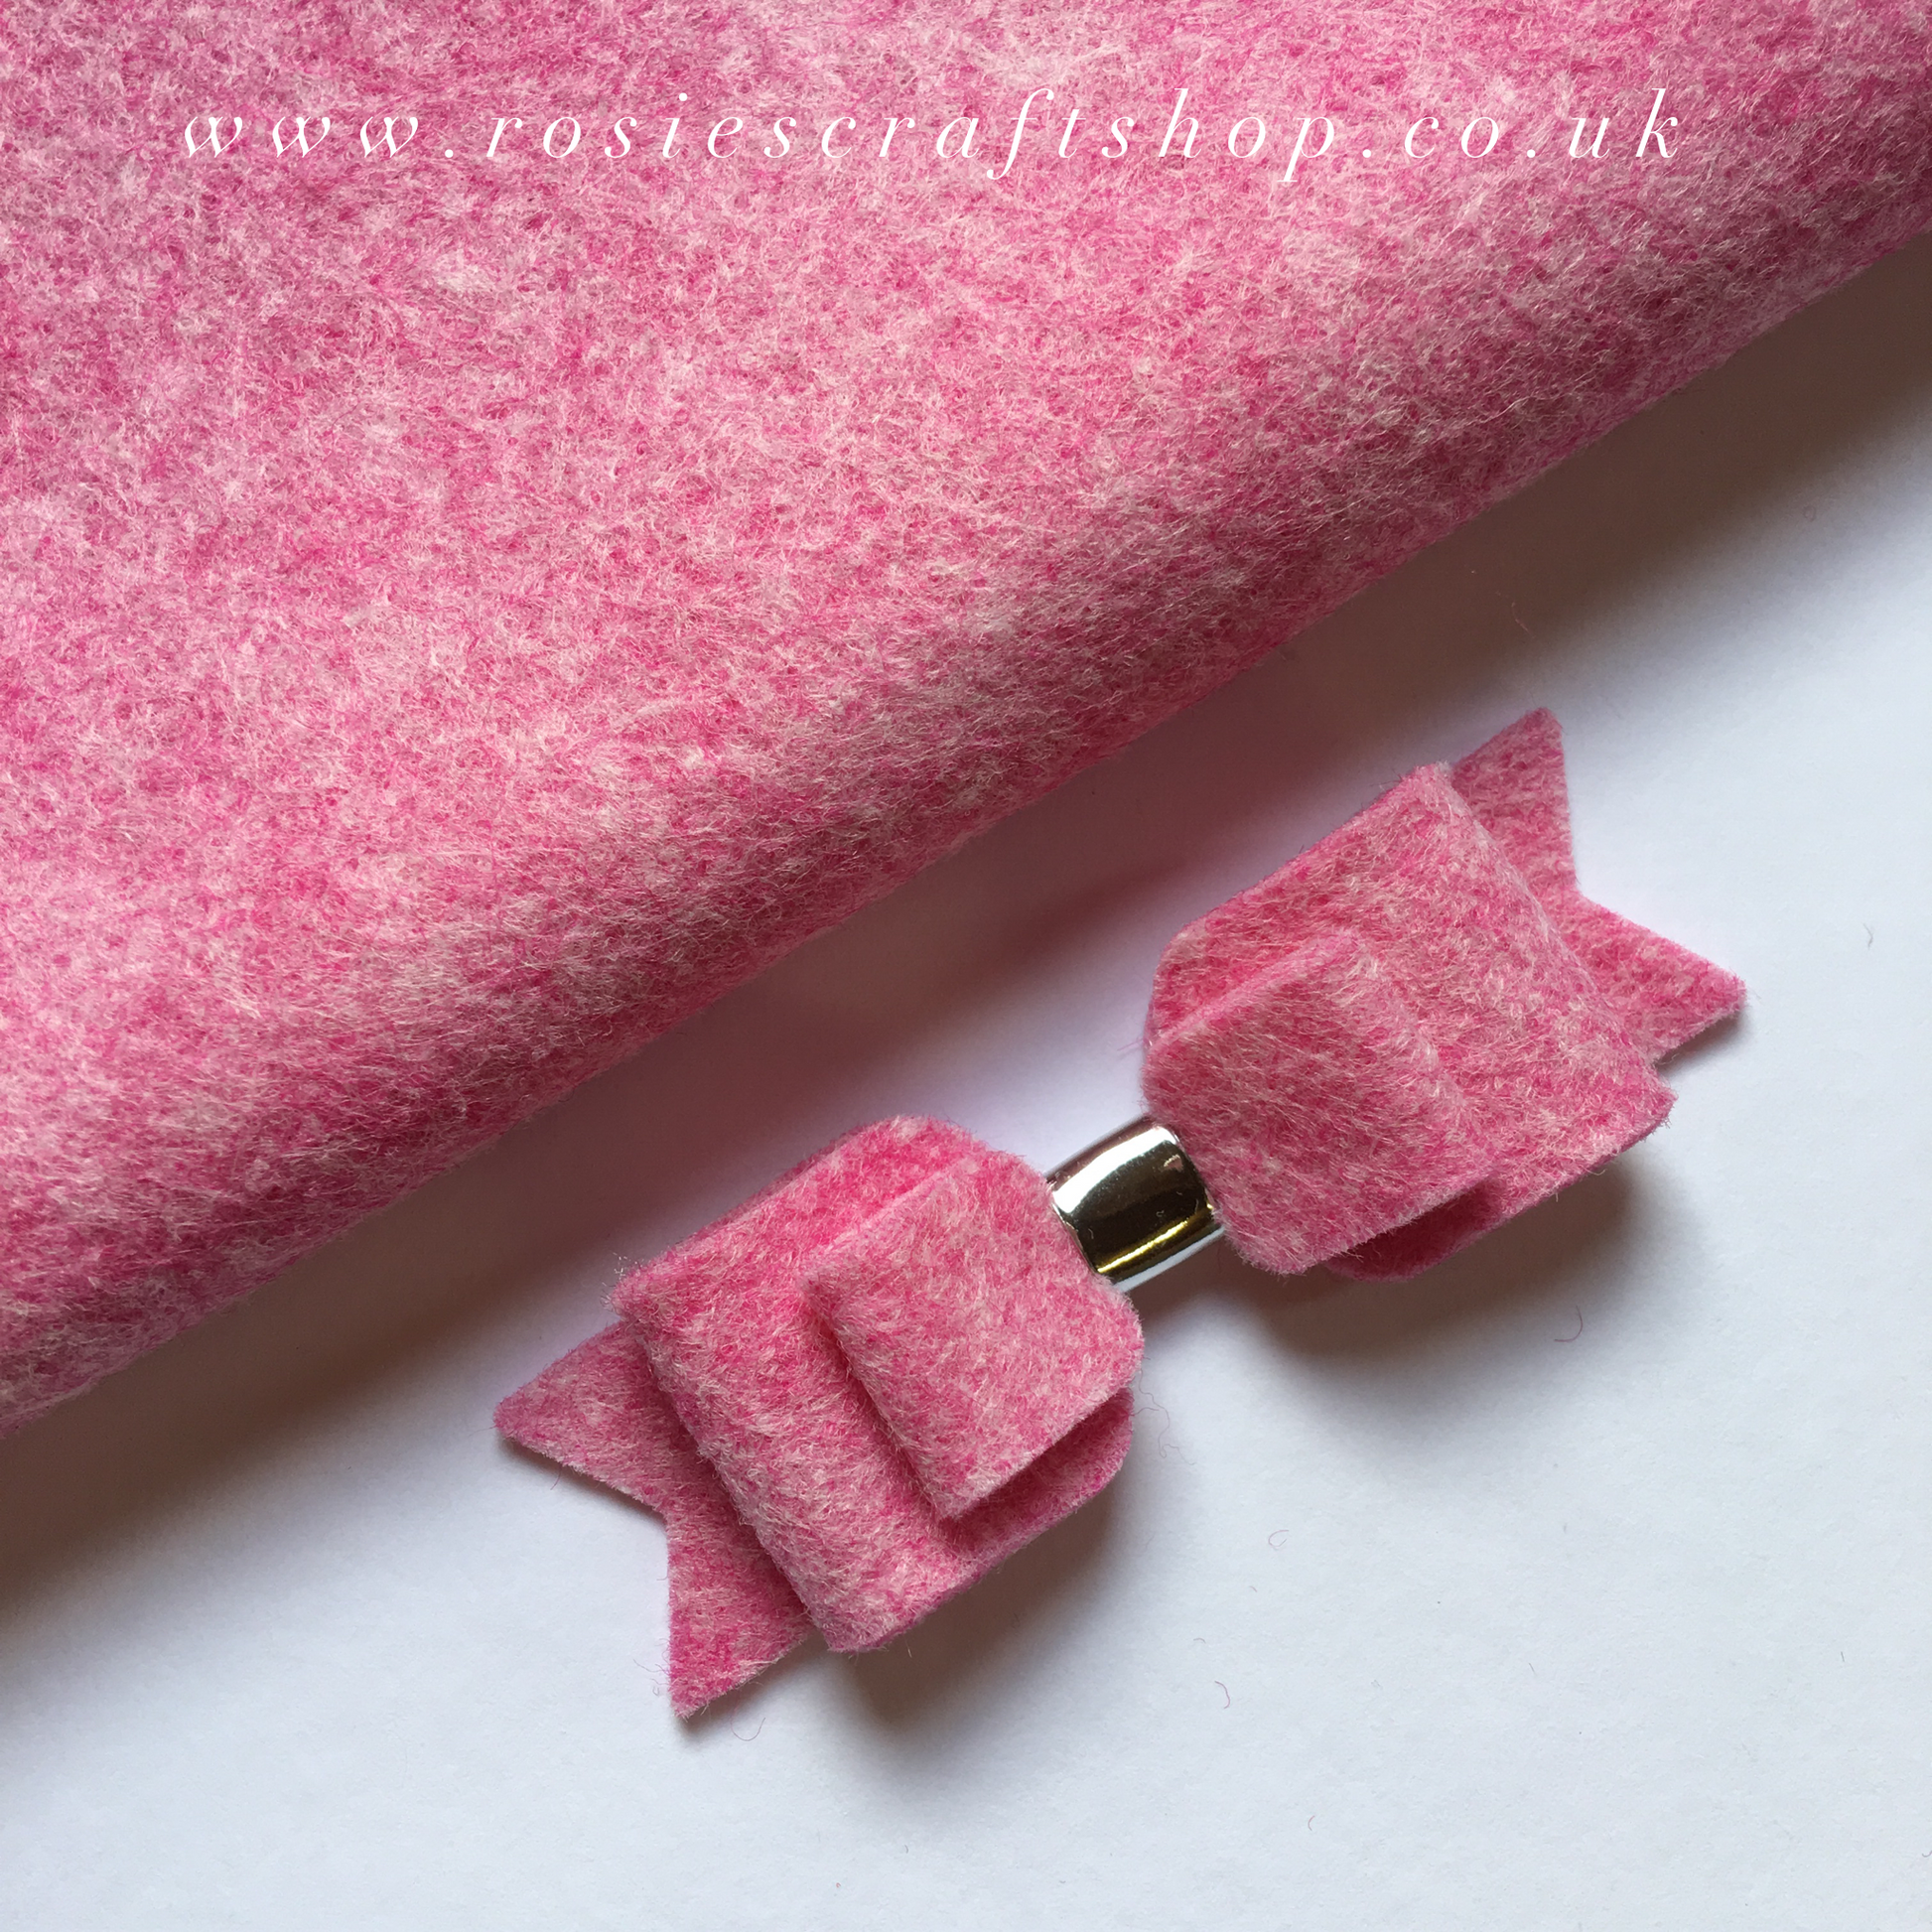 Pixie Pink Wool Blend Felt - Rosie's Craft Shop Ltd